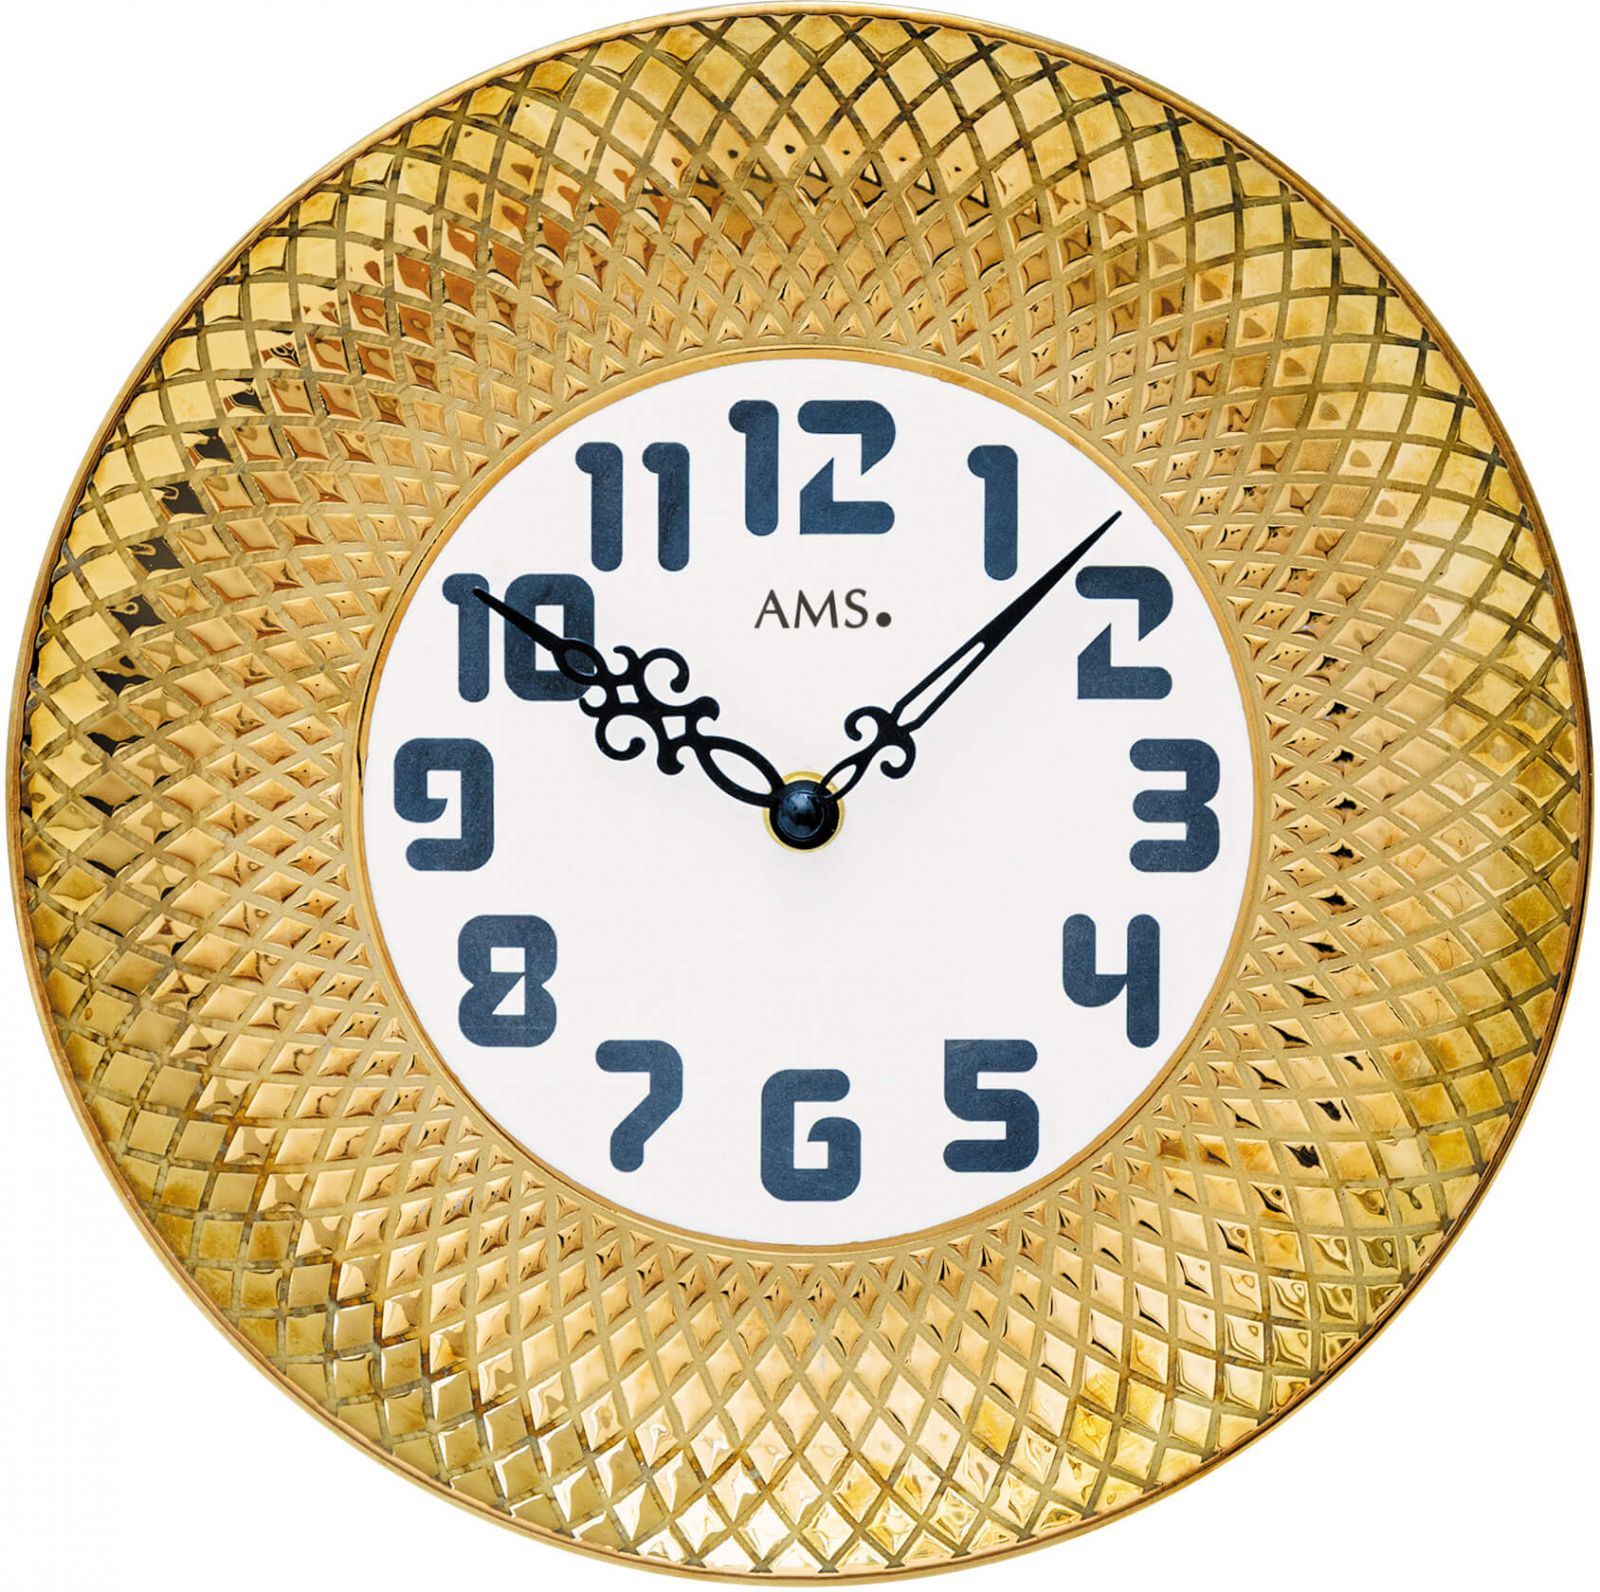 Nástěnné hodiny keramické ams 9615 zlatá